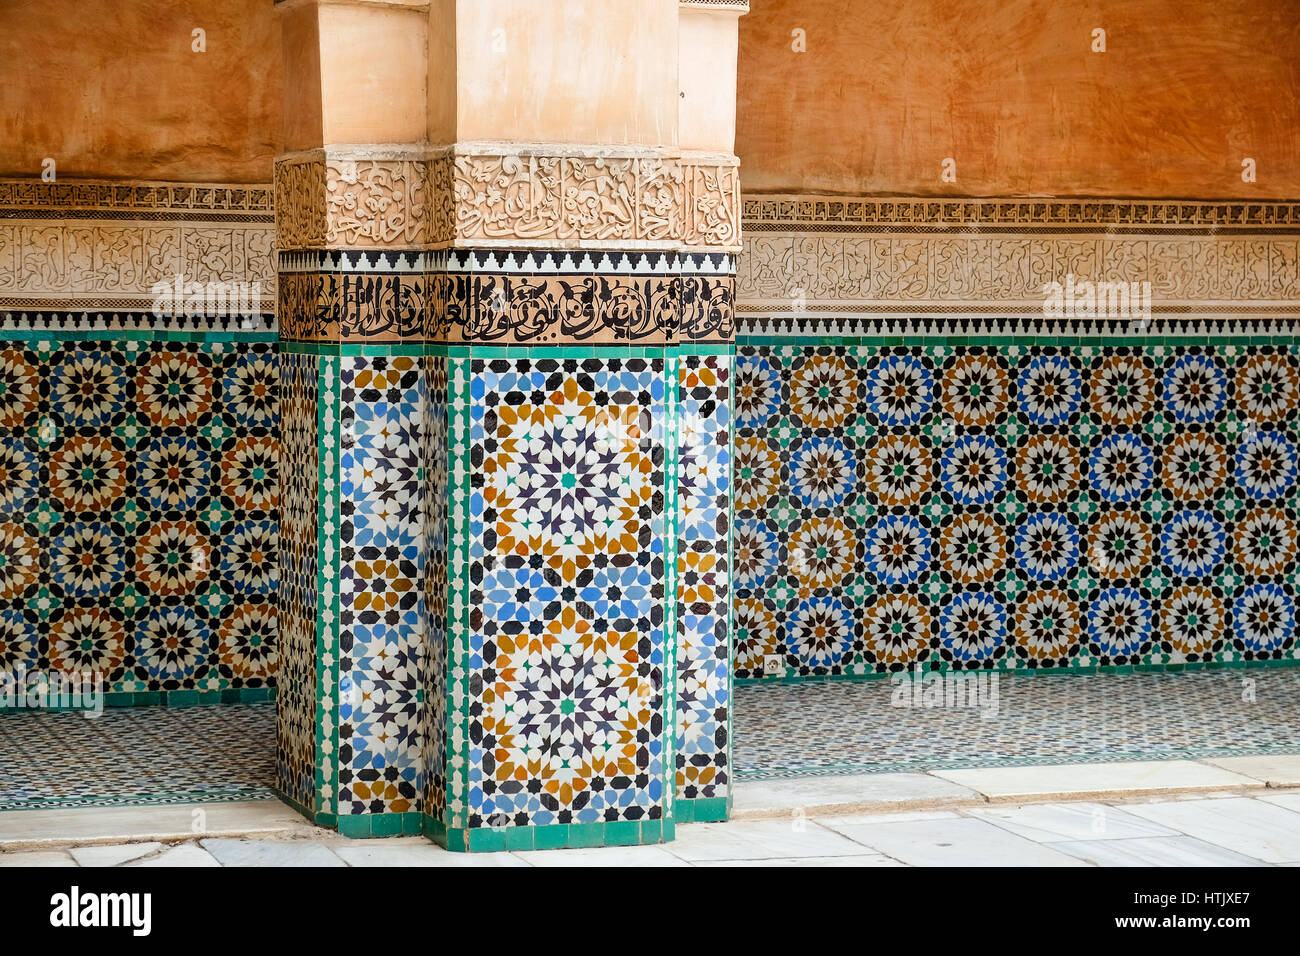 Colourful tiles adorn a building in Marrakech Stock Photo